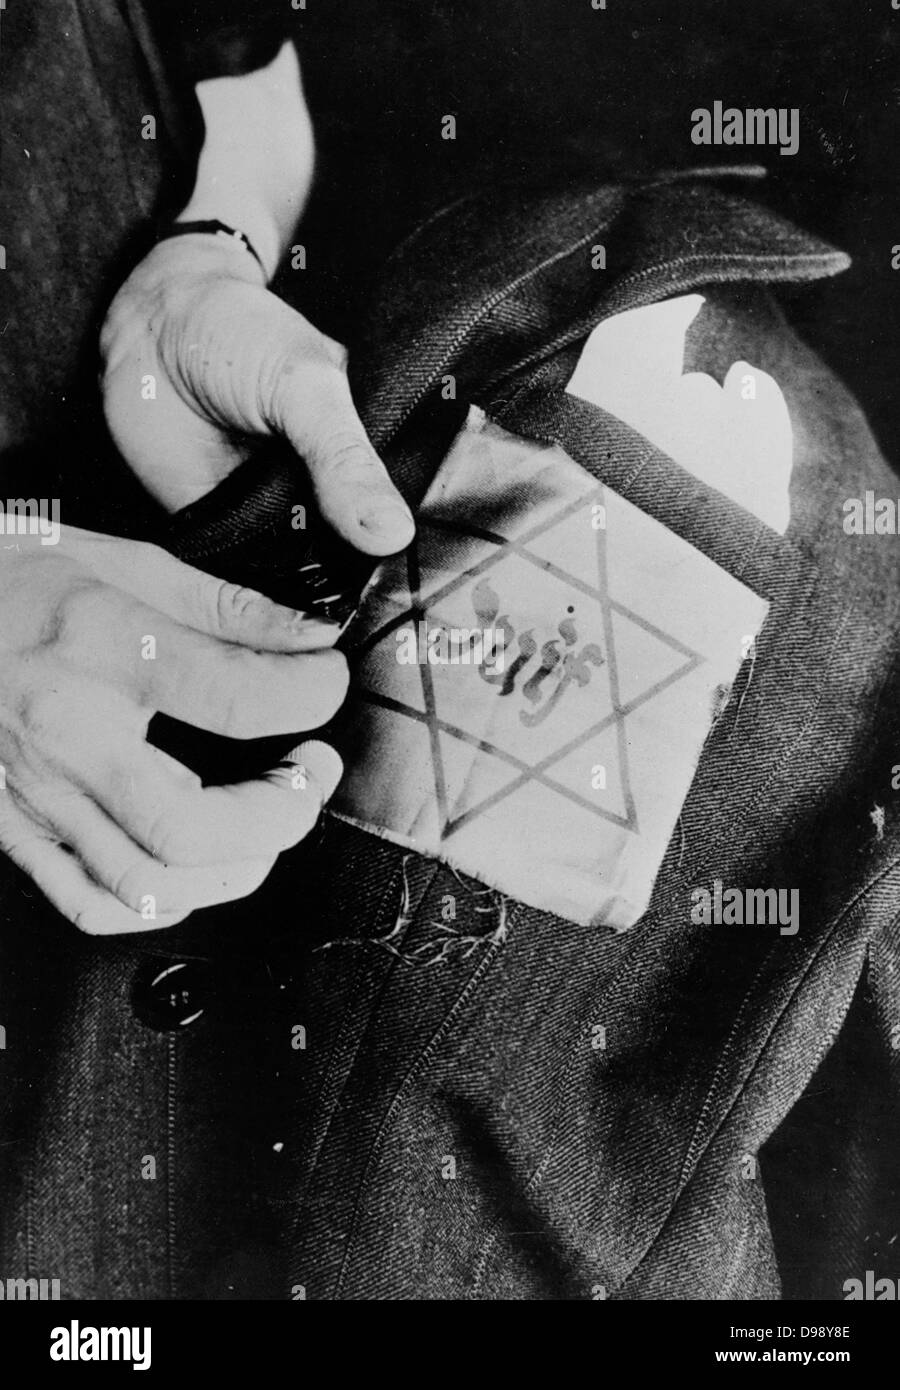 Stella gialla badge indossato dagli ebrei in nazista occupato in Europa circa 1941 Foto Stock